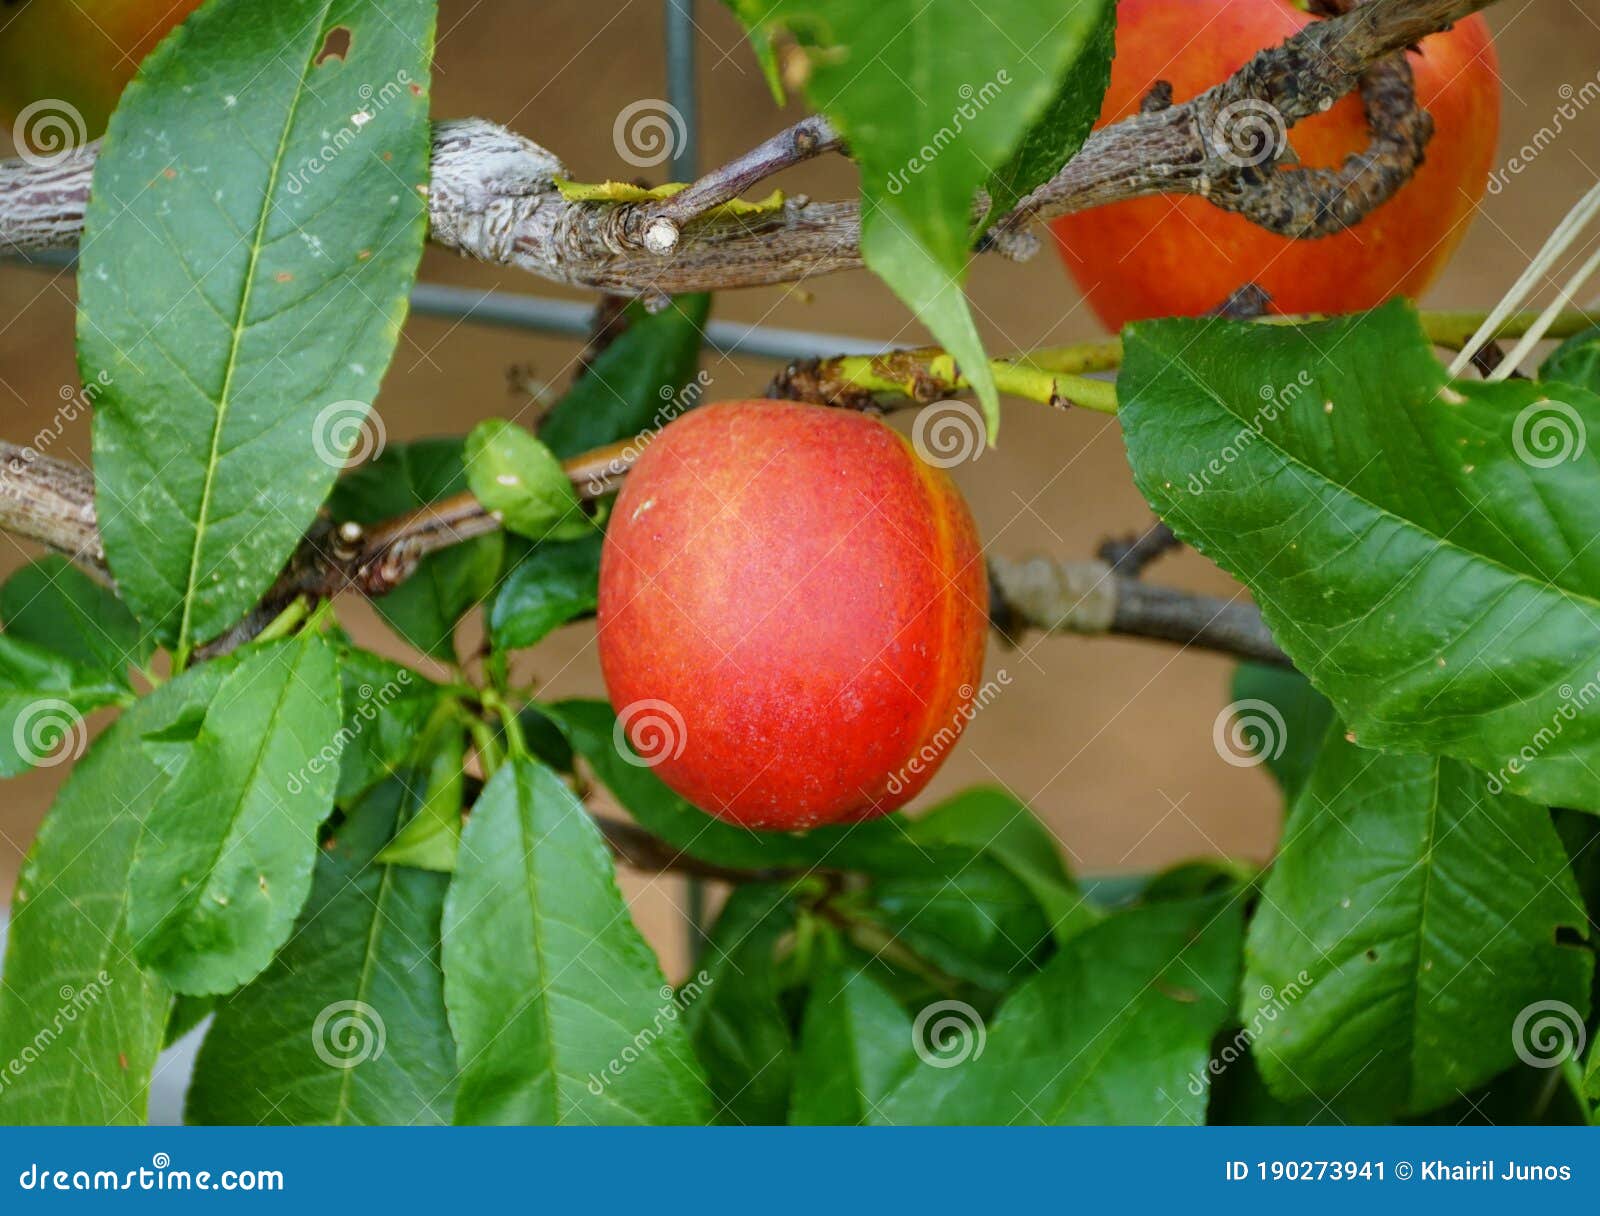 red nectarine `fantasia` fruit on the tree